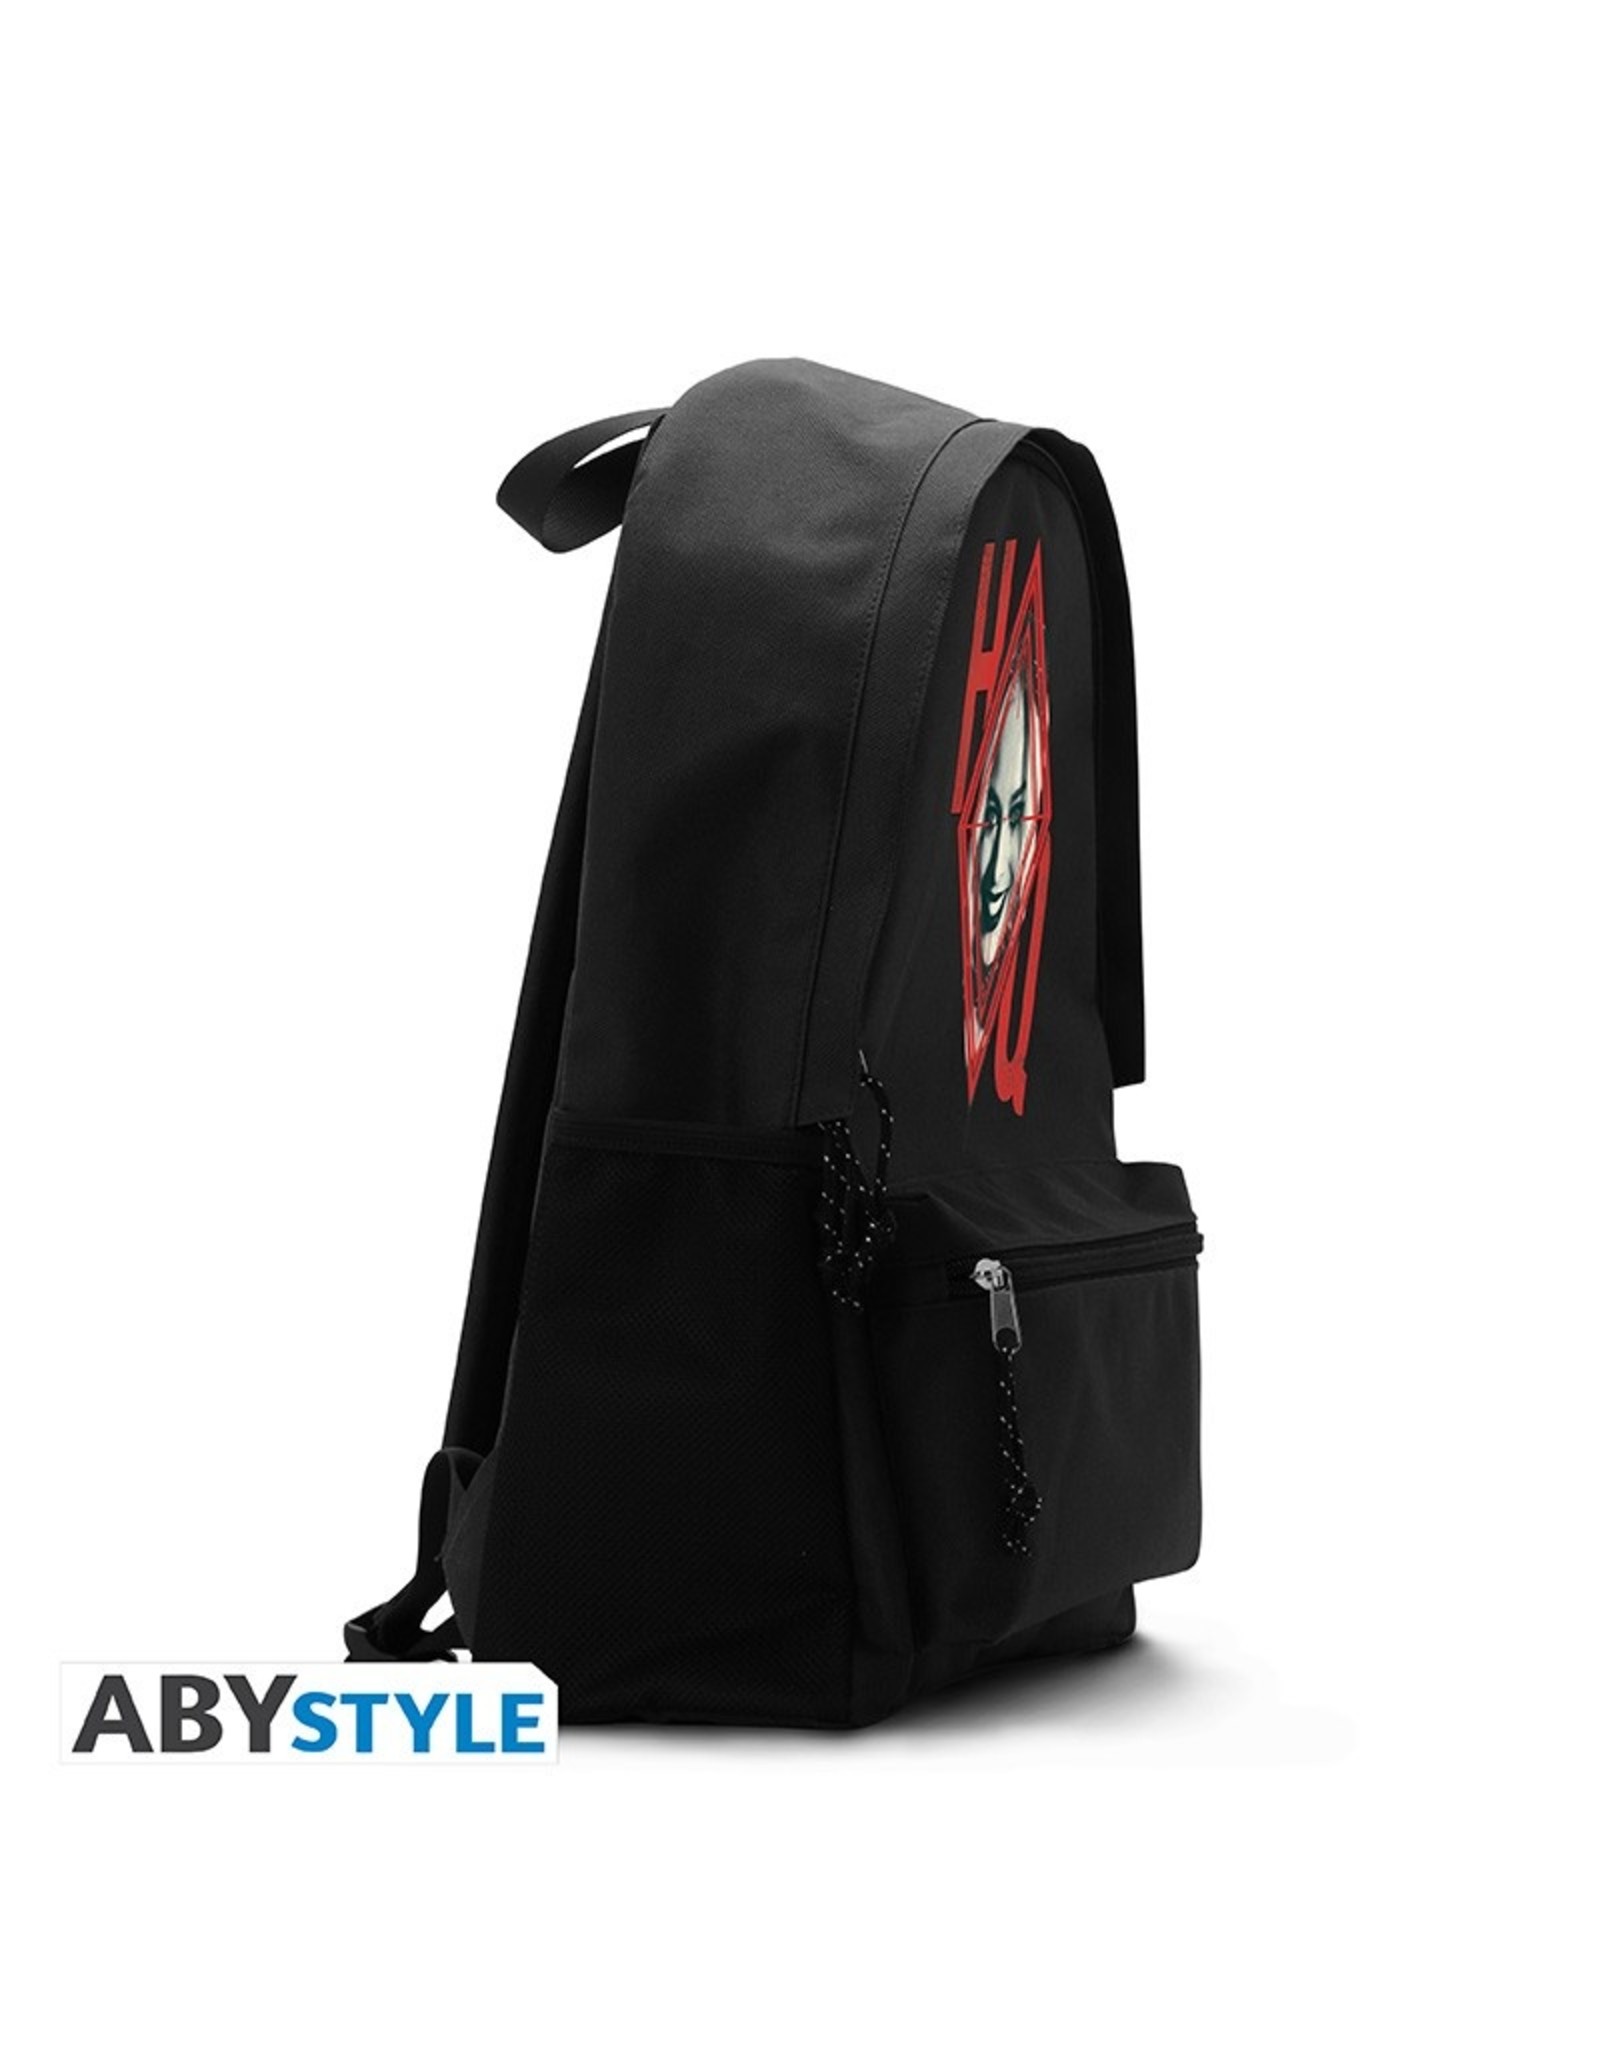 DC Comics Merchandise - DC Comics Backpack "Harley Quinn" - 42cm